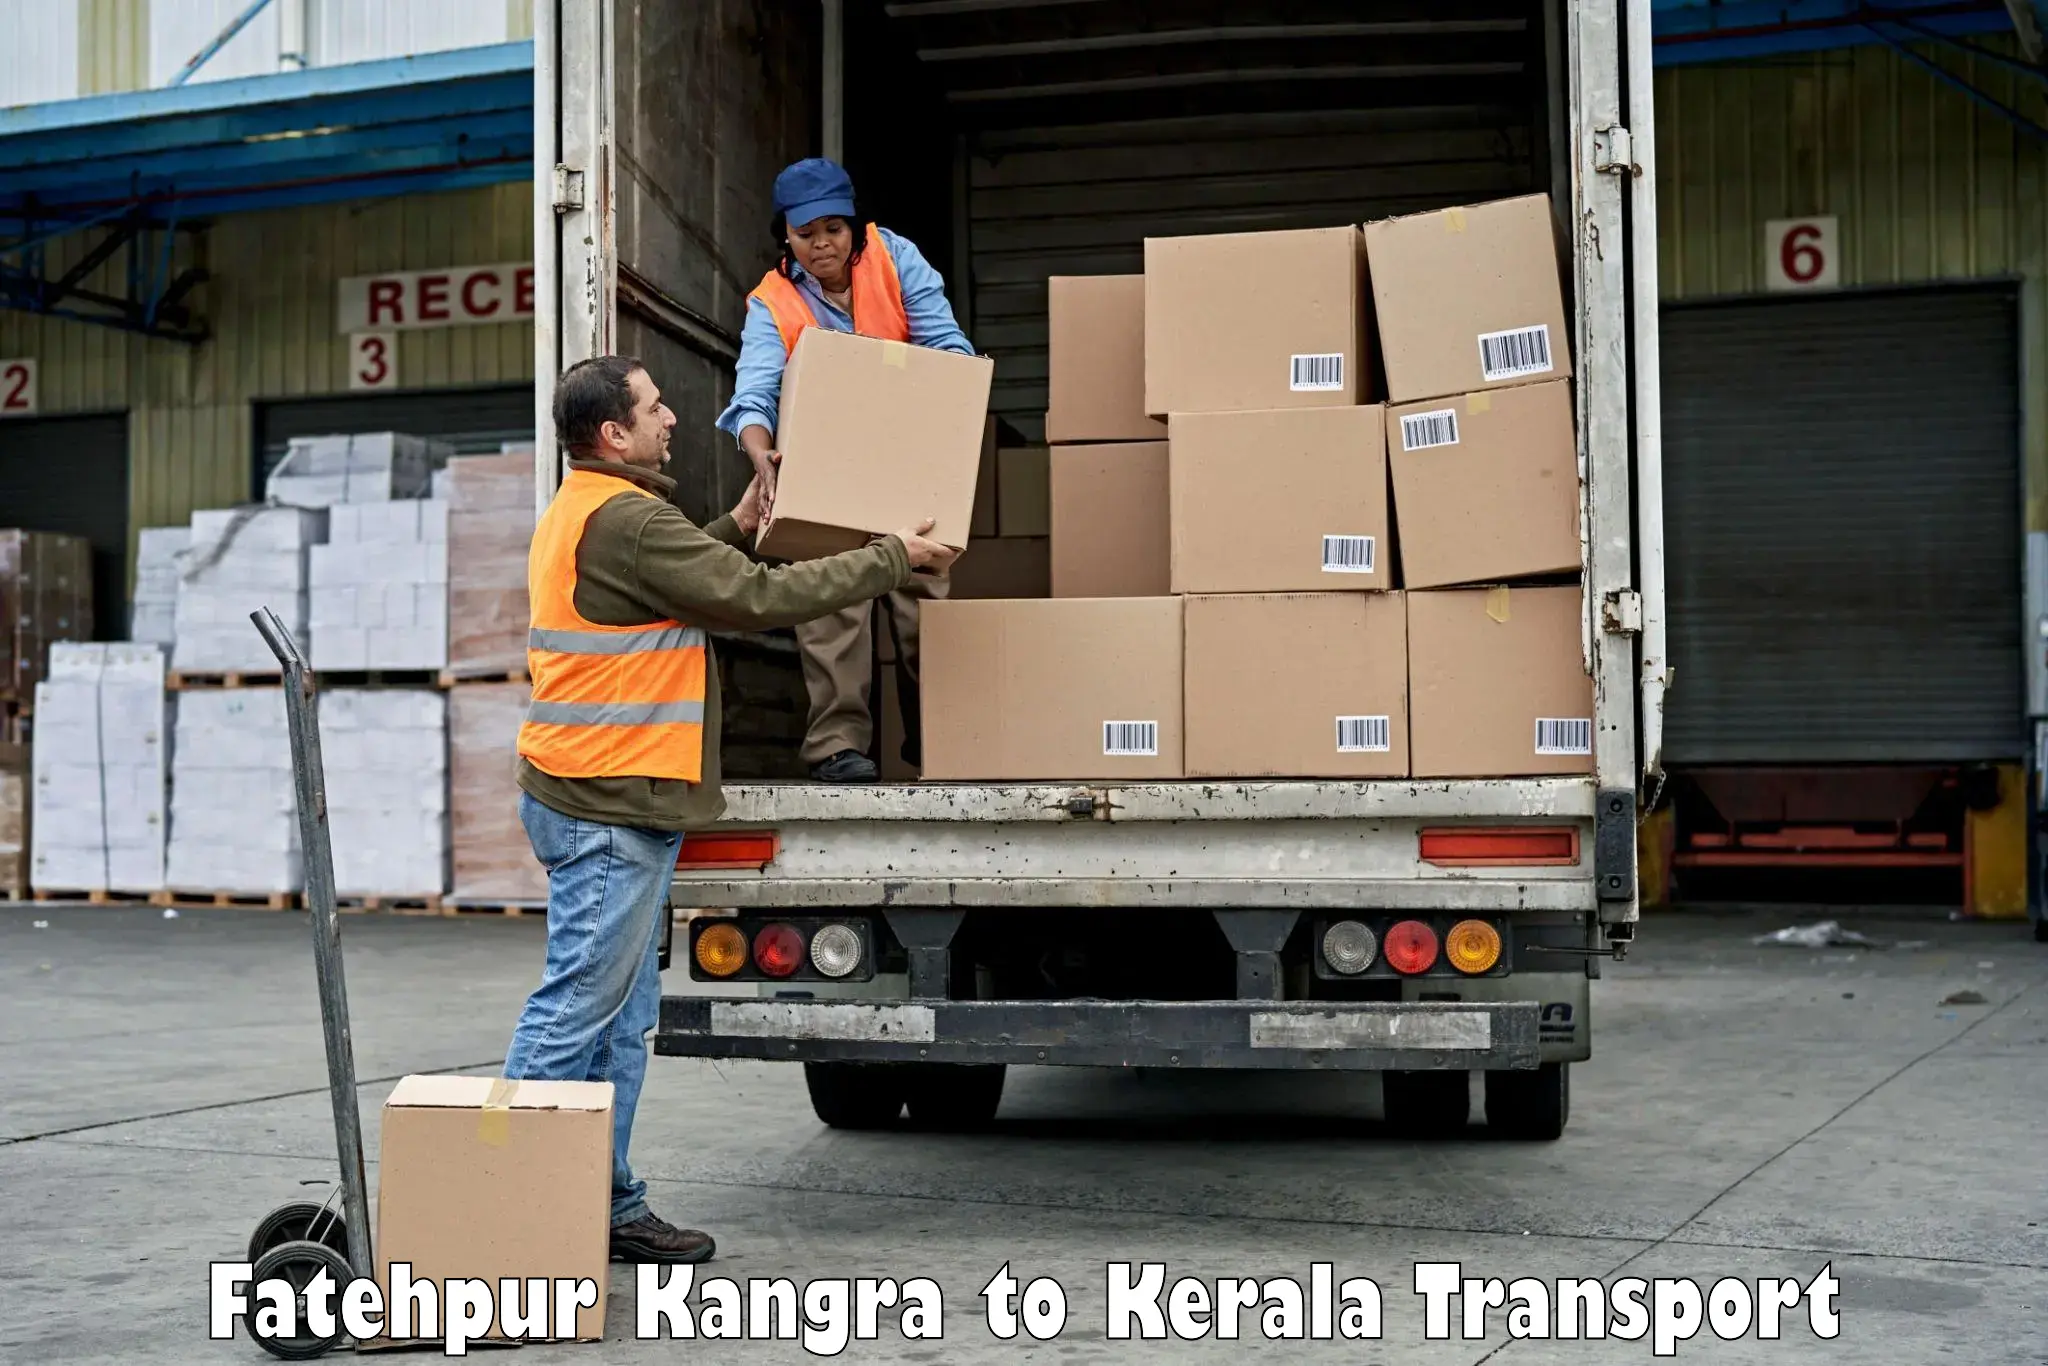 Transport in sharing Fatehpur Kangra to Thiruvananthapuram